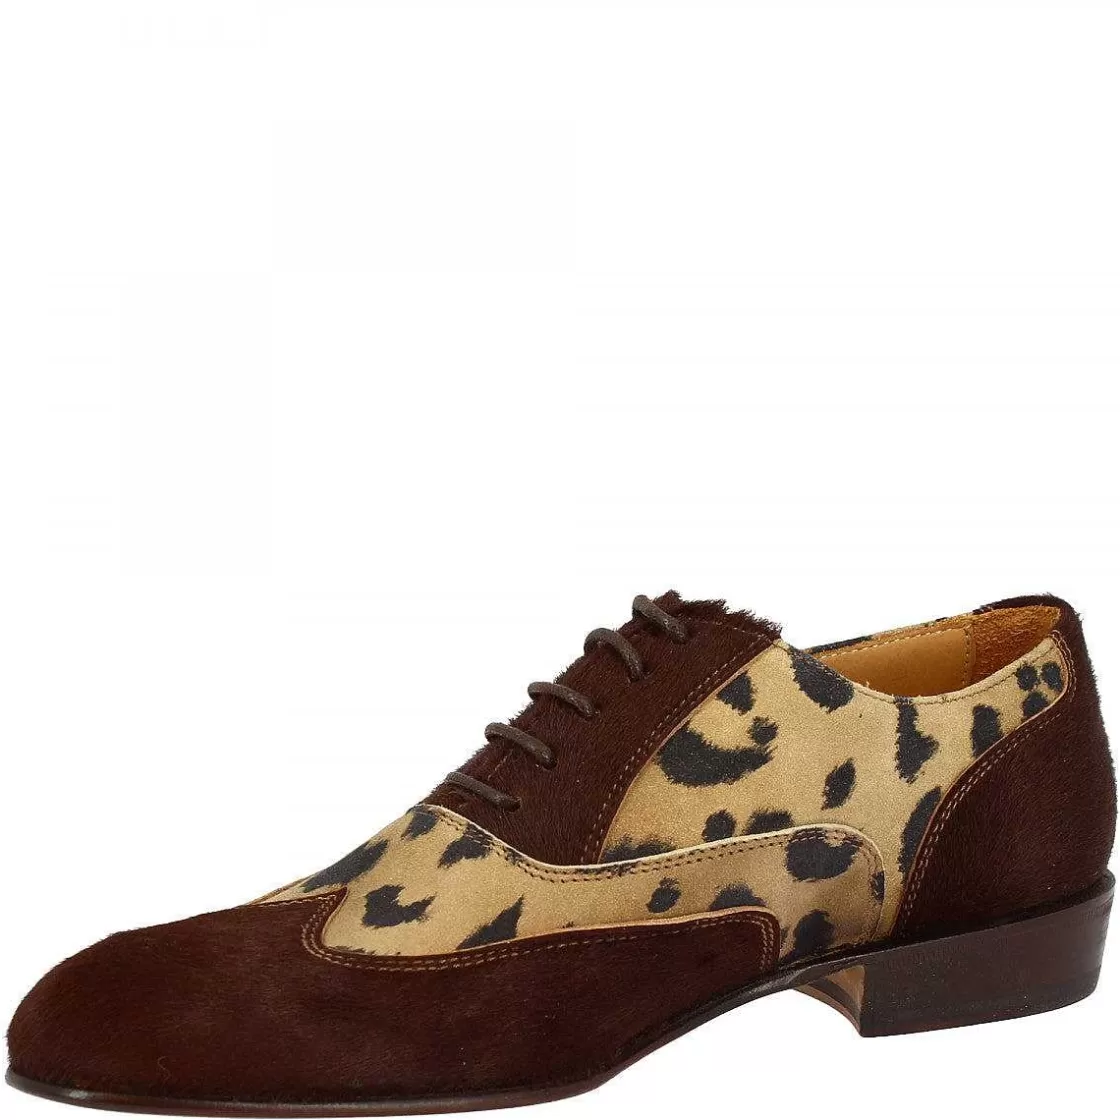 Leonardo Handmade Women'S Oxford Shoes In Leopard Patterned Dark Brown Pony Skin Shop